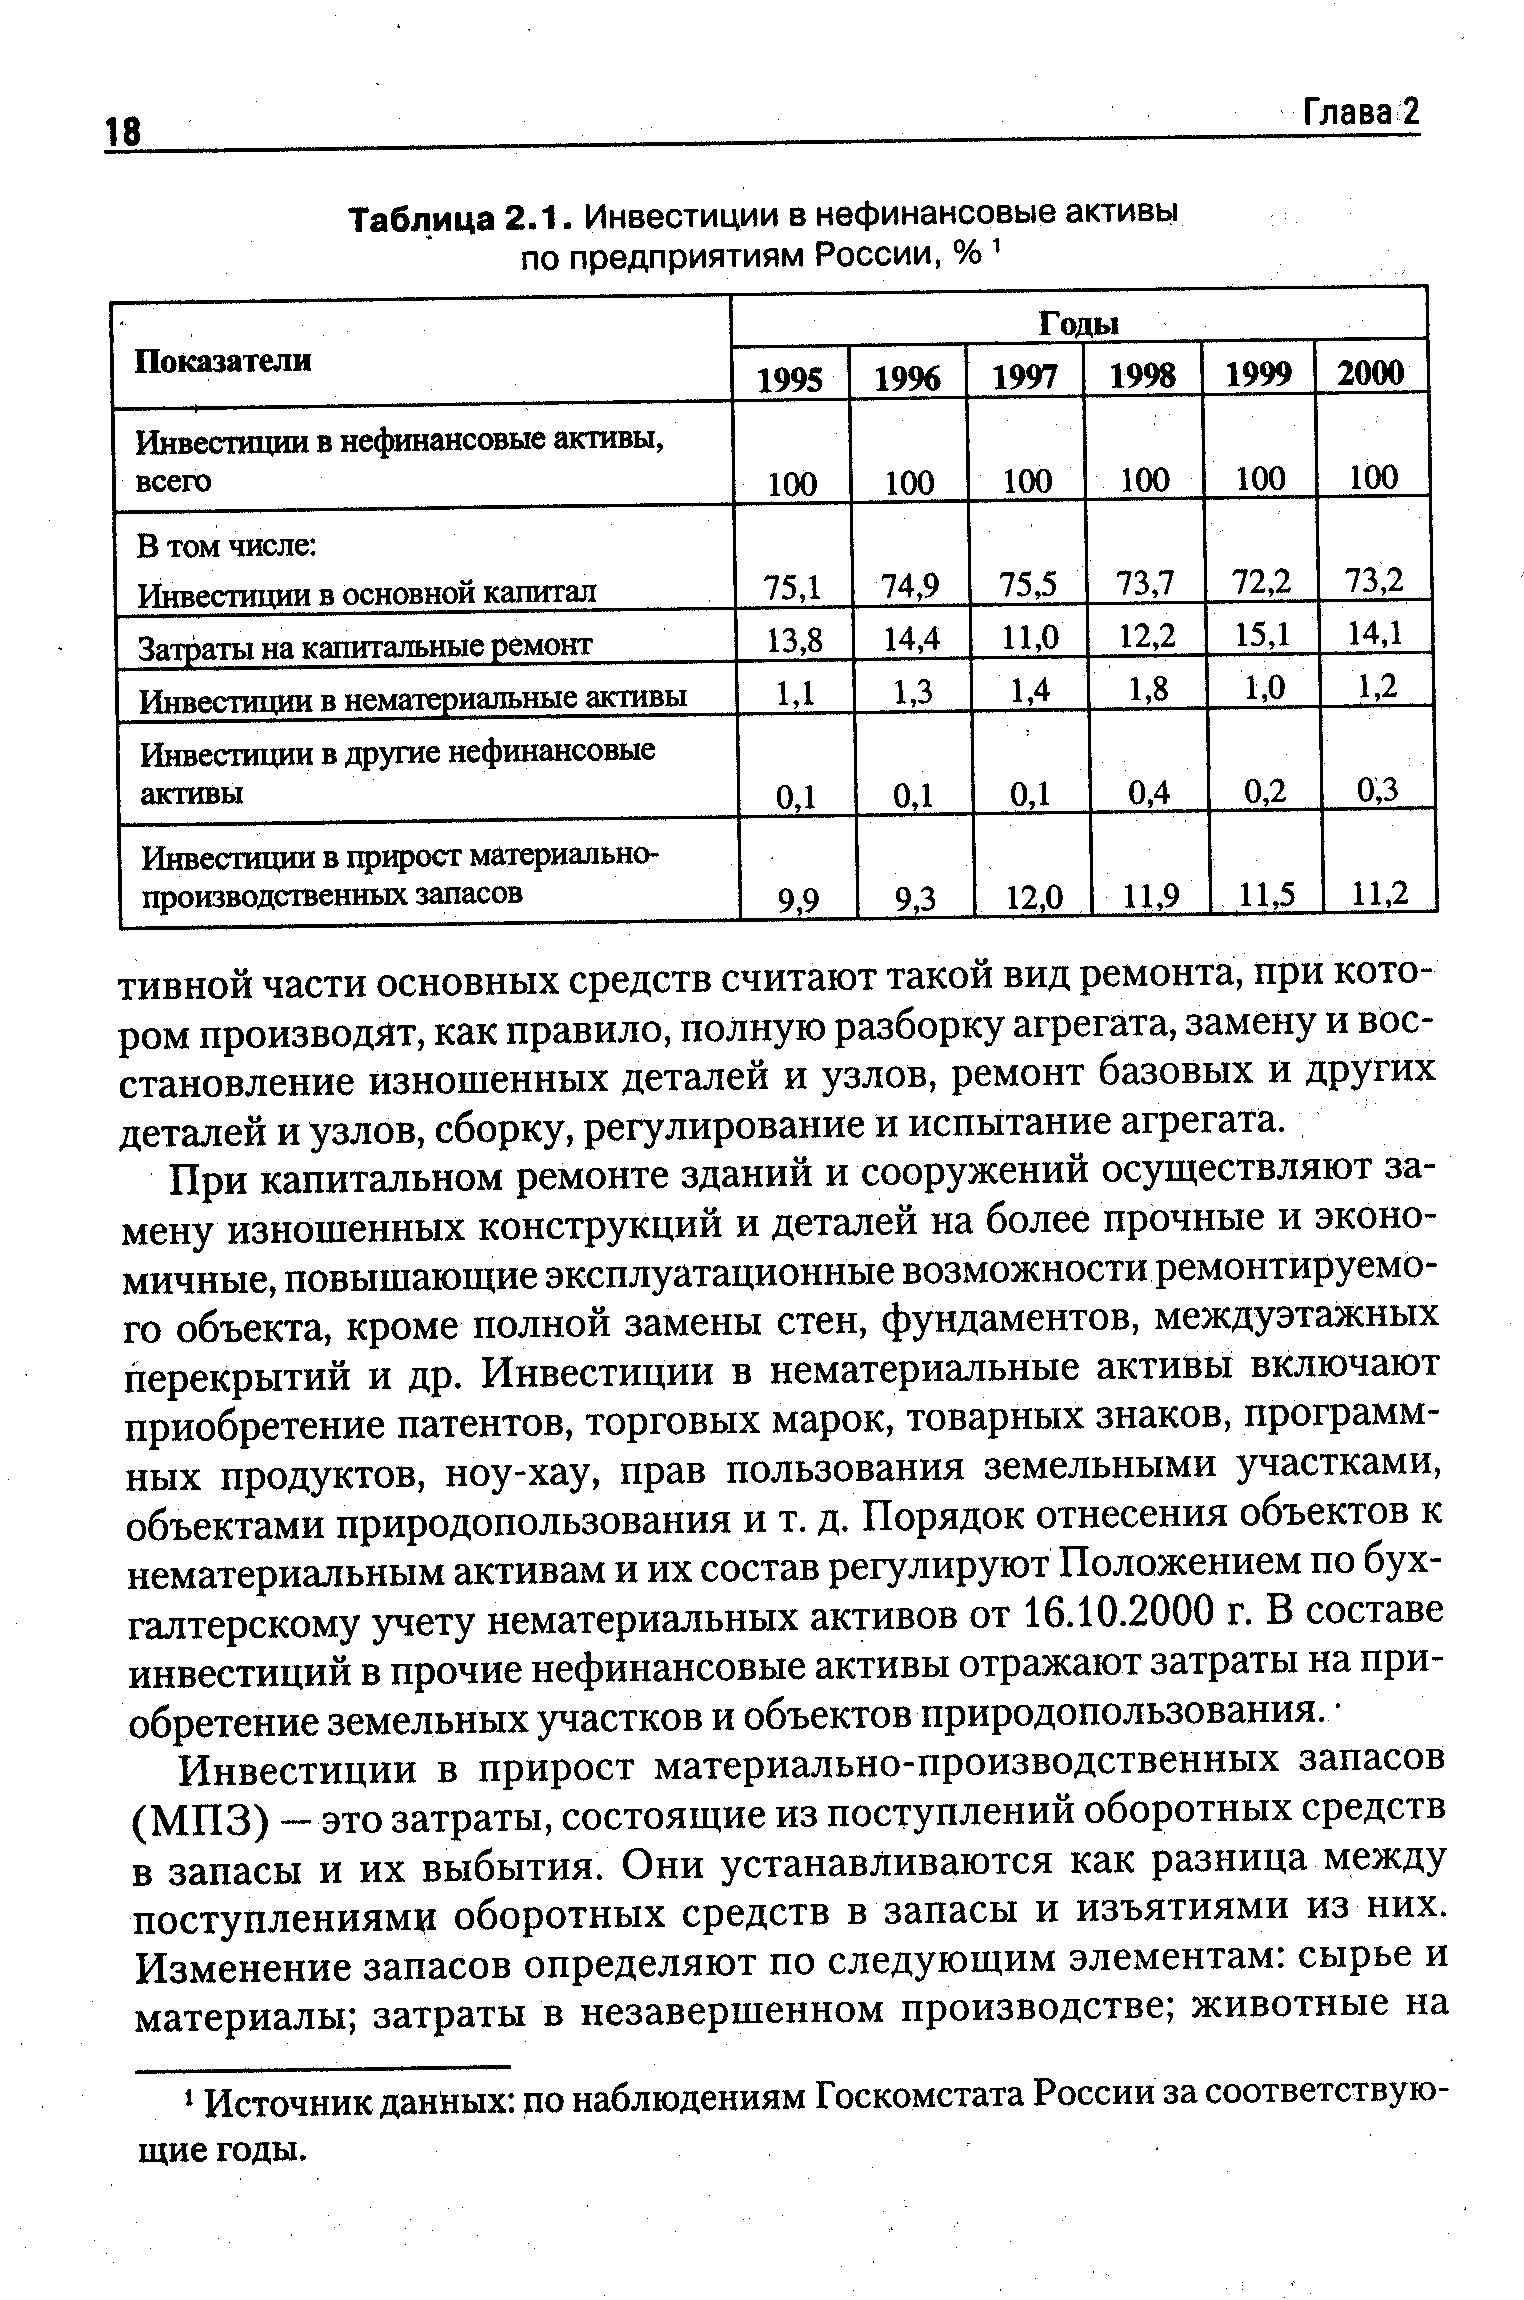 Таблица 2.1. Инвестиции в нефинансовые активы по предприятиям России, %1
